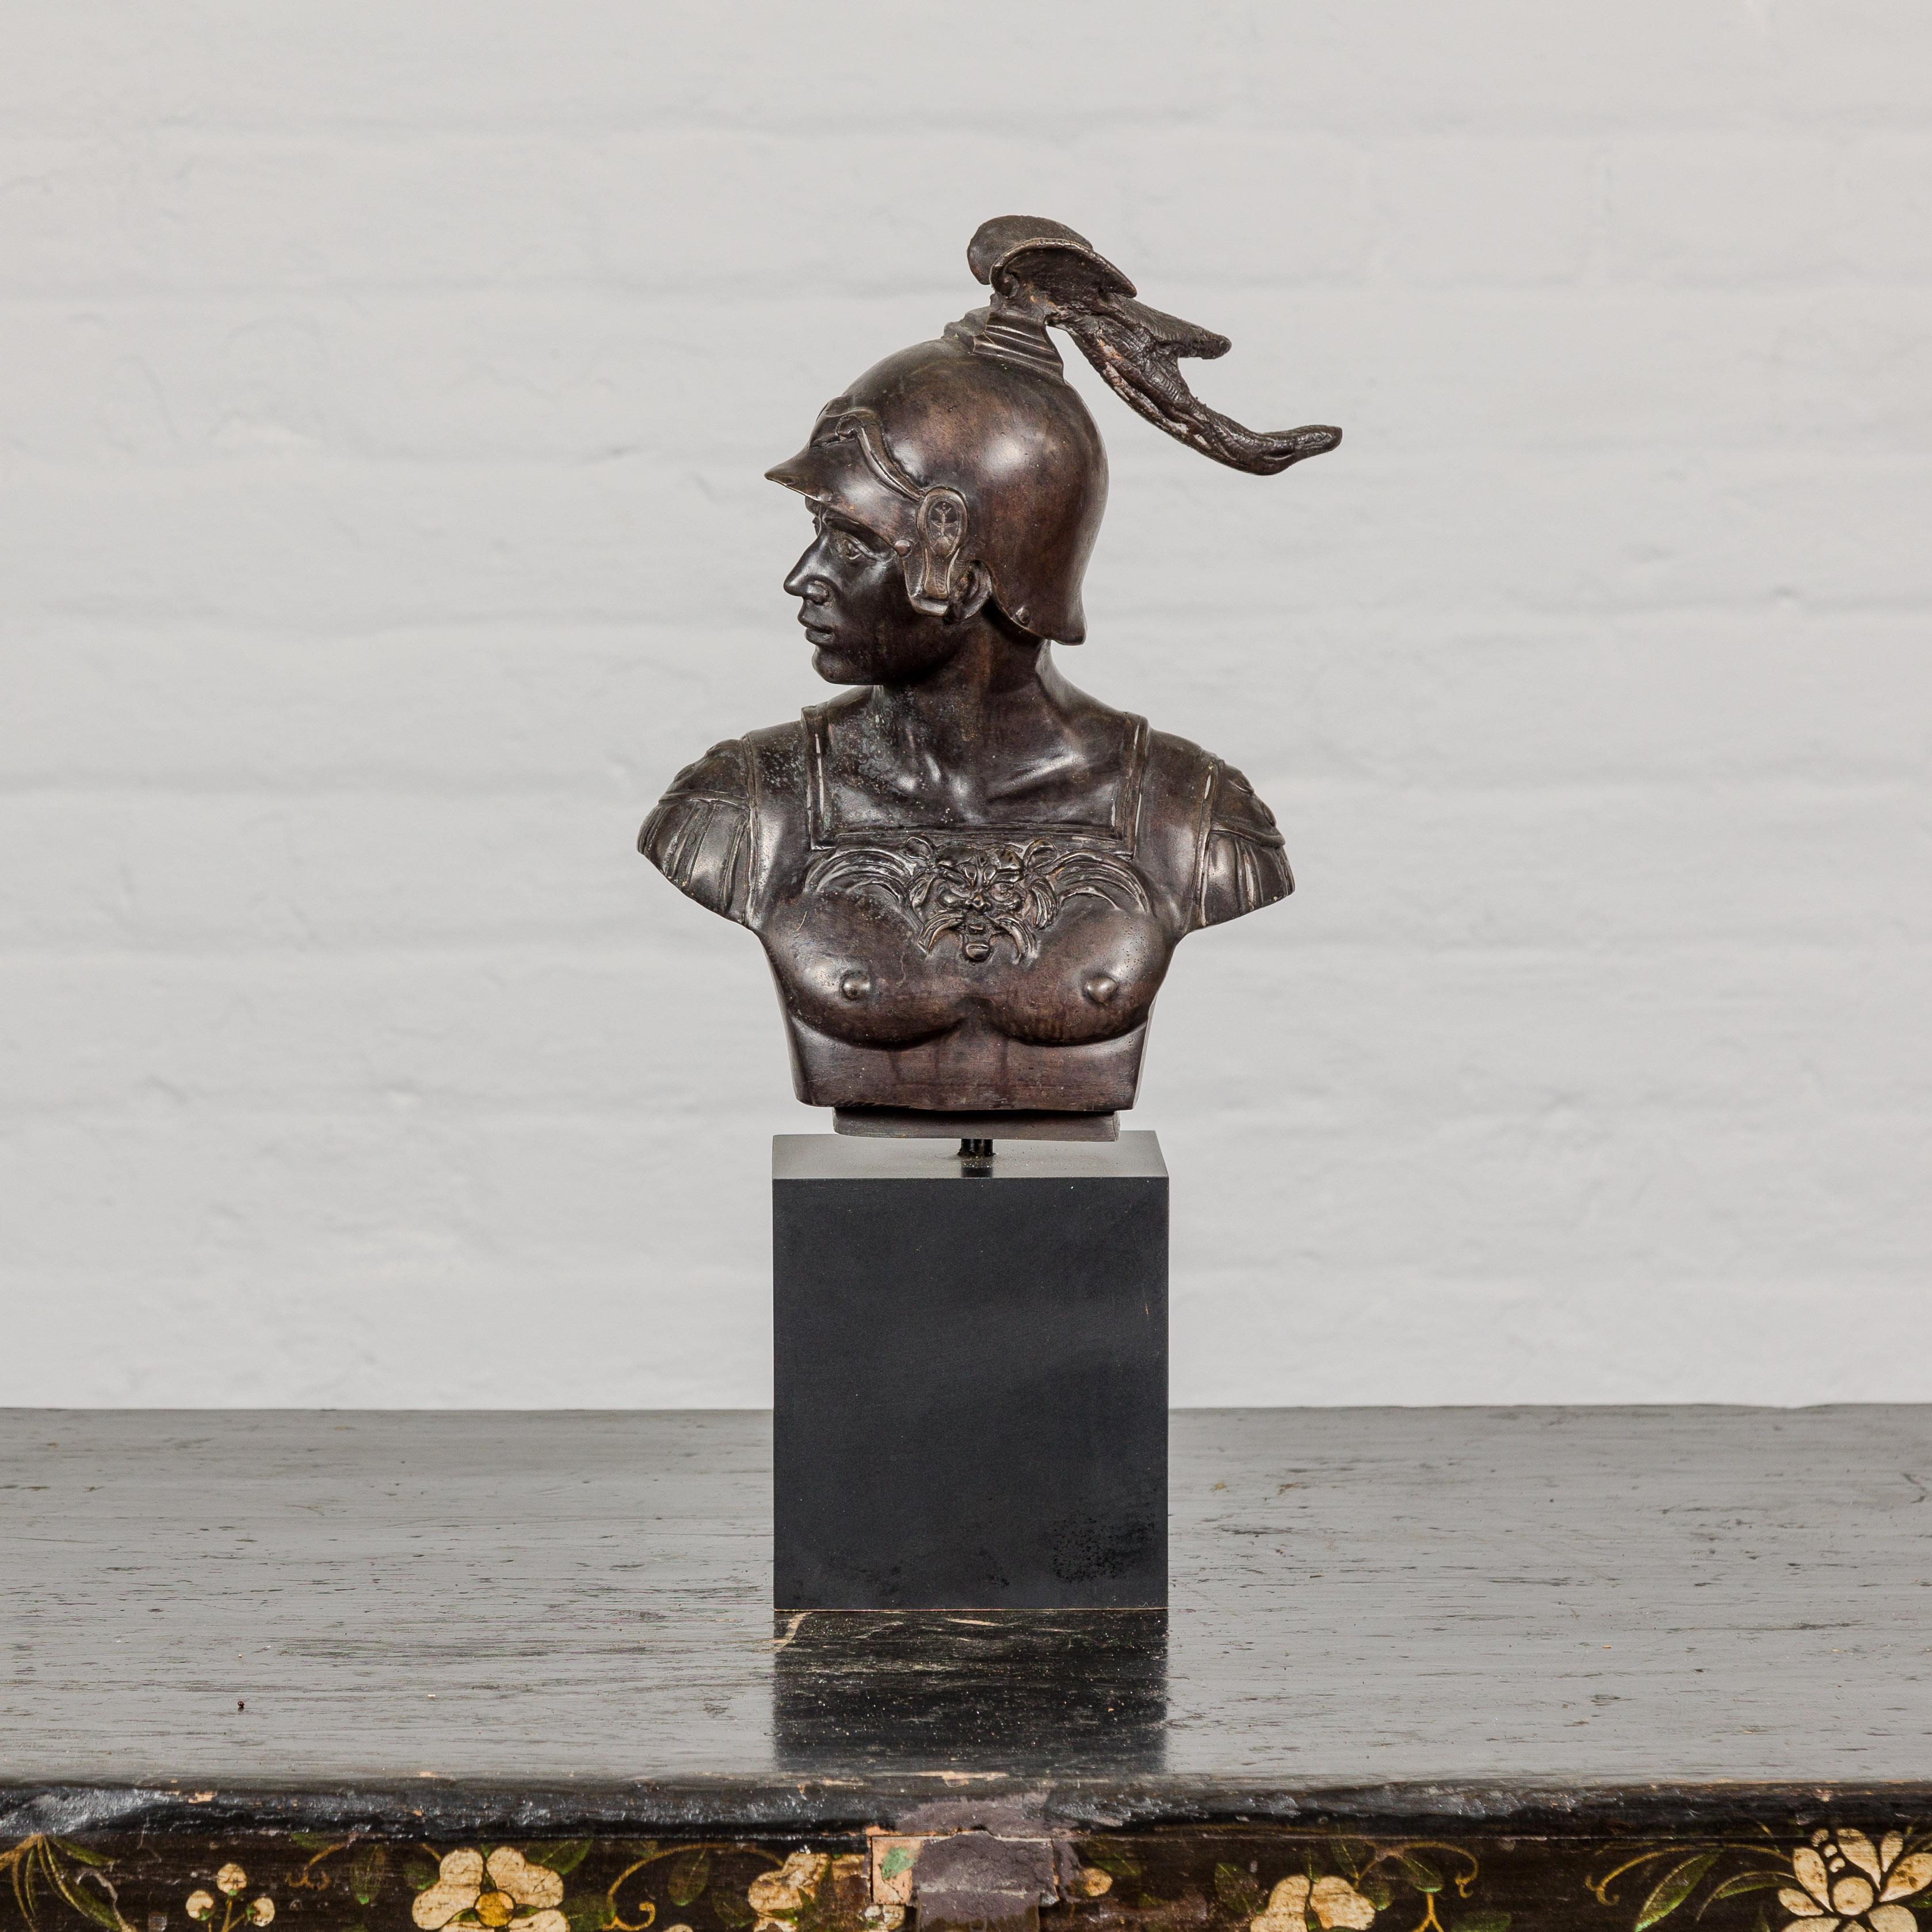 Eine Bronzebüste im griechisch-römischen Stil, die einen spartanischen Soldaten darstellt, auf einem schwarzen Holzsockel. Diese Bronzebüste im griechisch-römischen Stil, die meisterhaft einen spartanischen Soldaten darstellt, ist ein